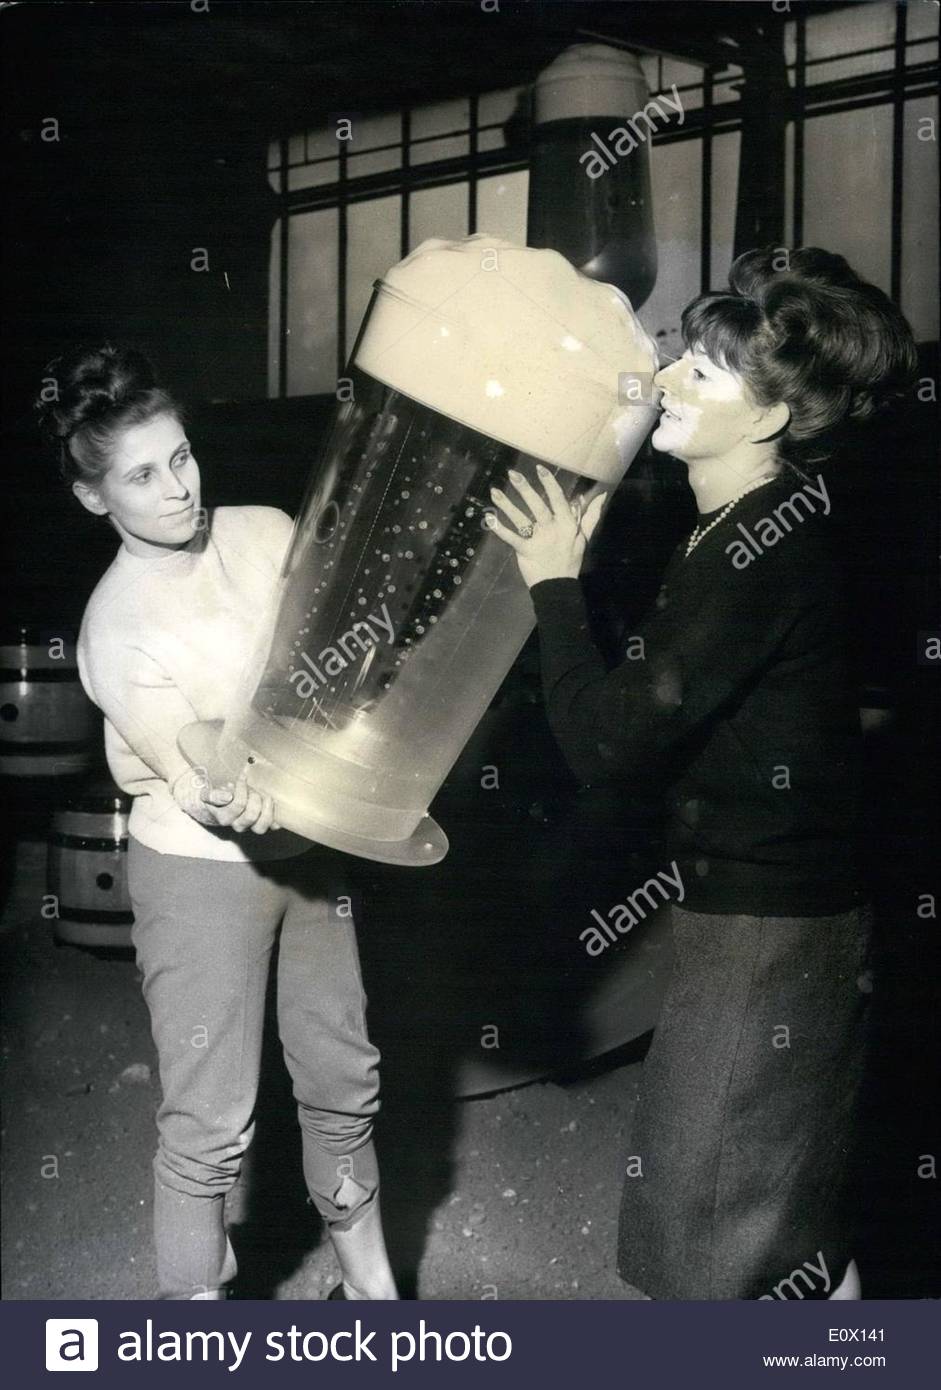 10-oktober-1964-hat-der-herzhafte-durst-sein-symbol-gefunden-das-original-parade-der-riesen-bier.jpg